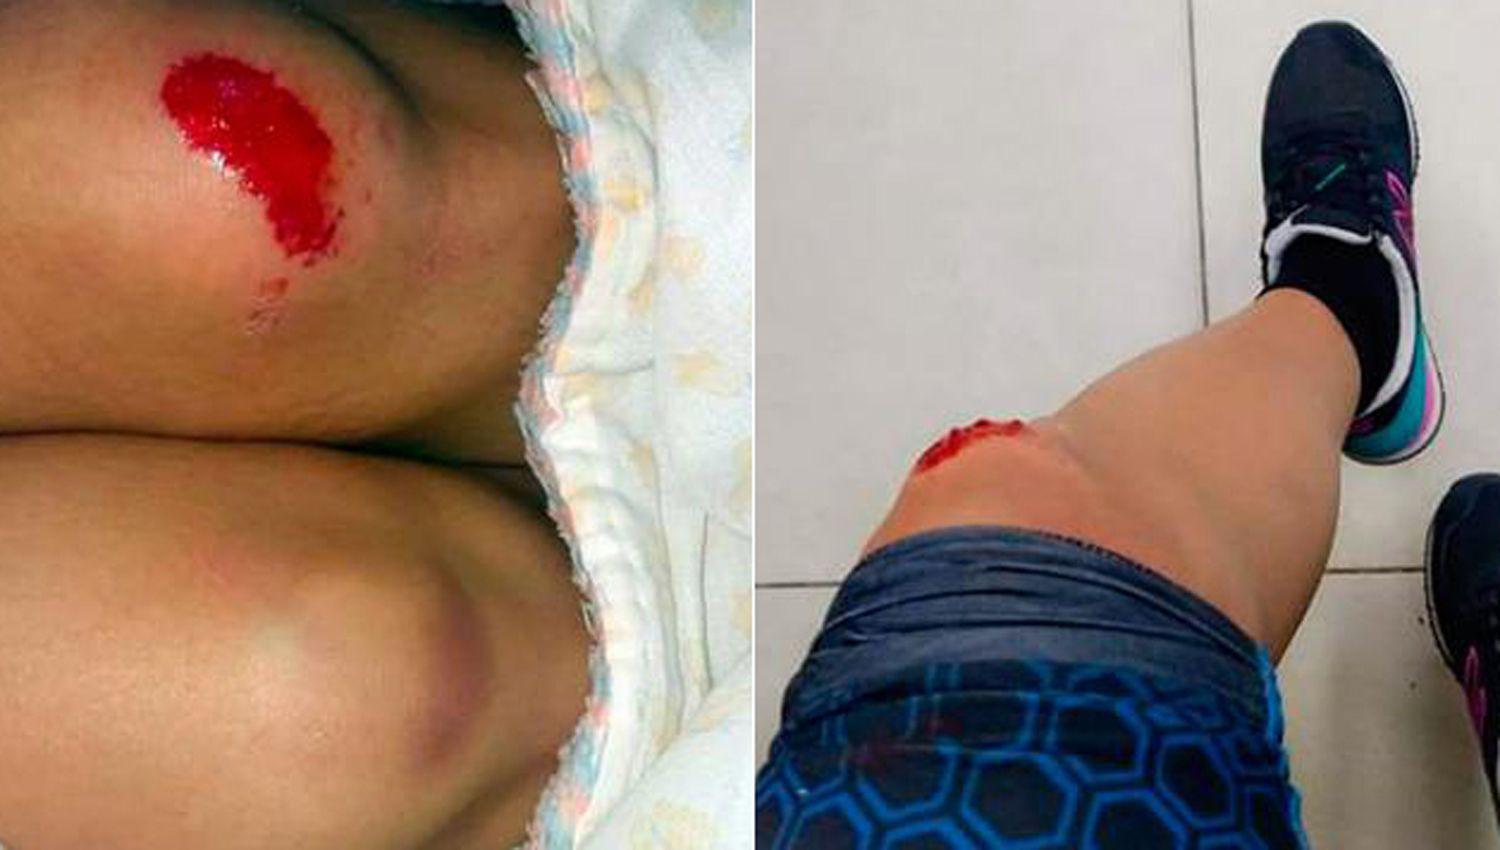 La joven sufrió diversas heridas en sus piernas por la caída de su bicicleta